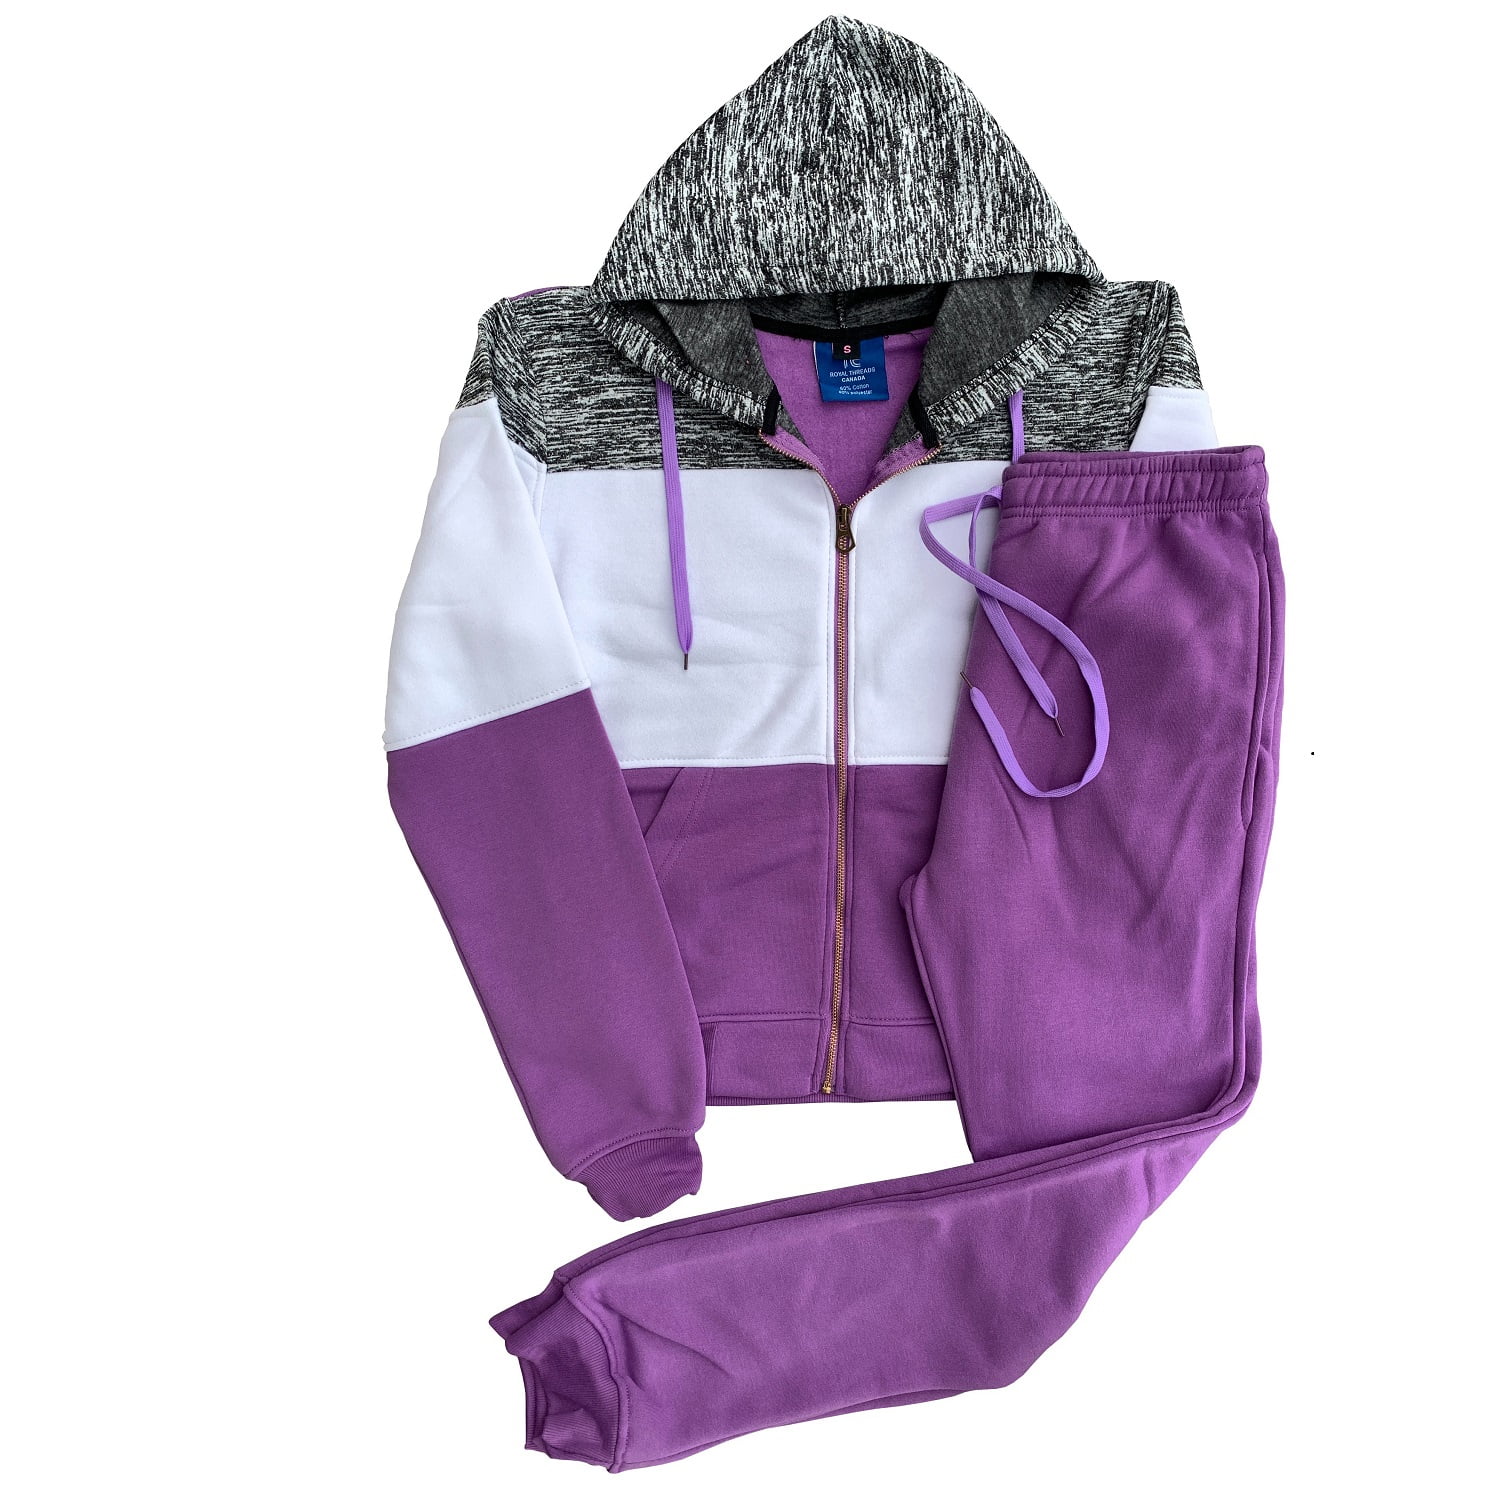 Women 2 Piece Suit in Purple Color. -  Canada